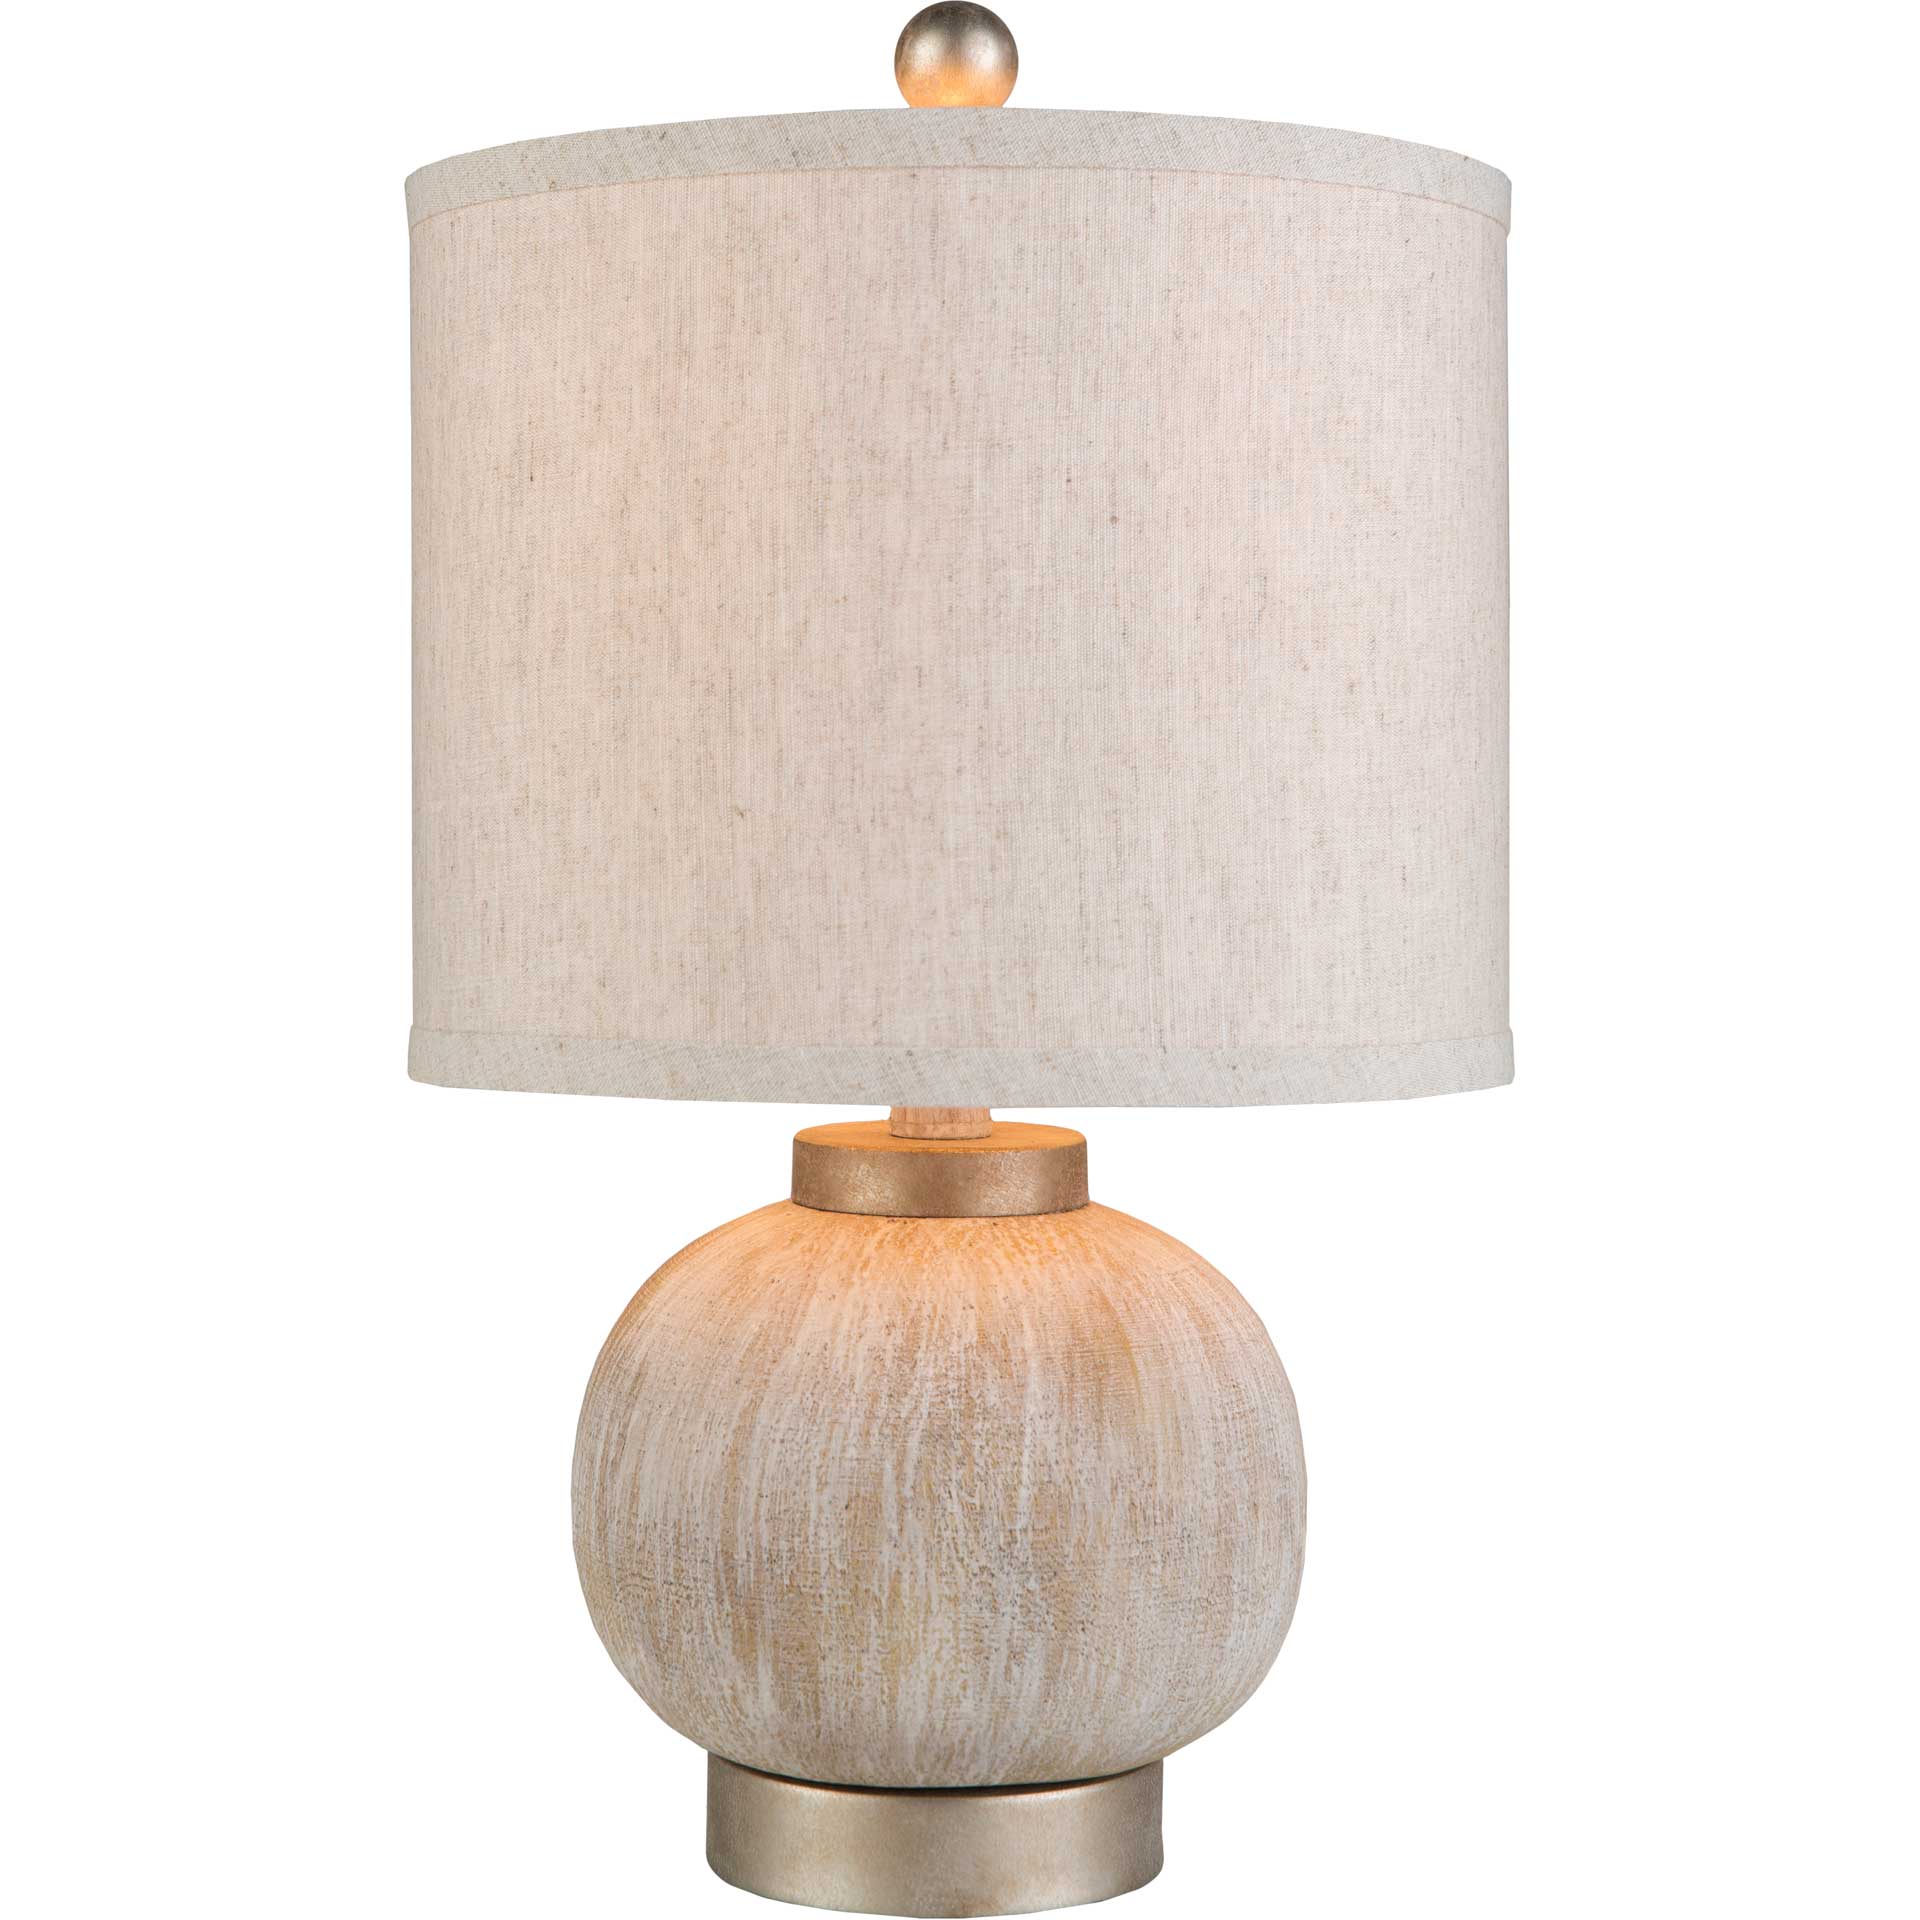 Denver Table Lamp Ivory/Tan/White